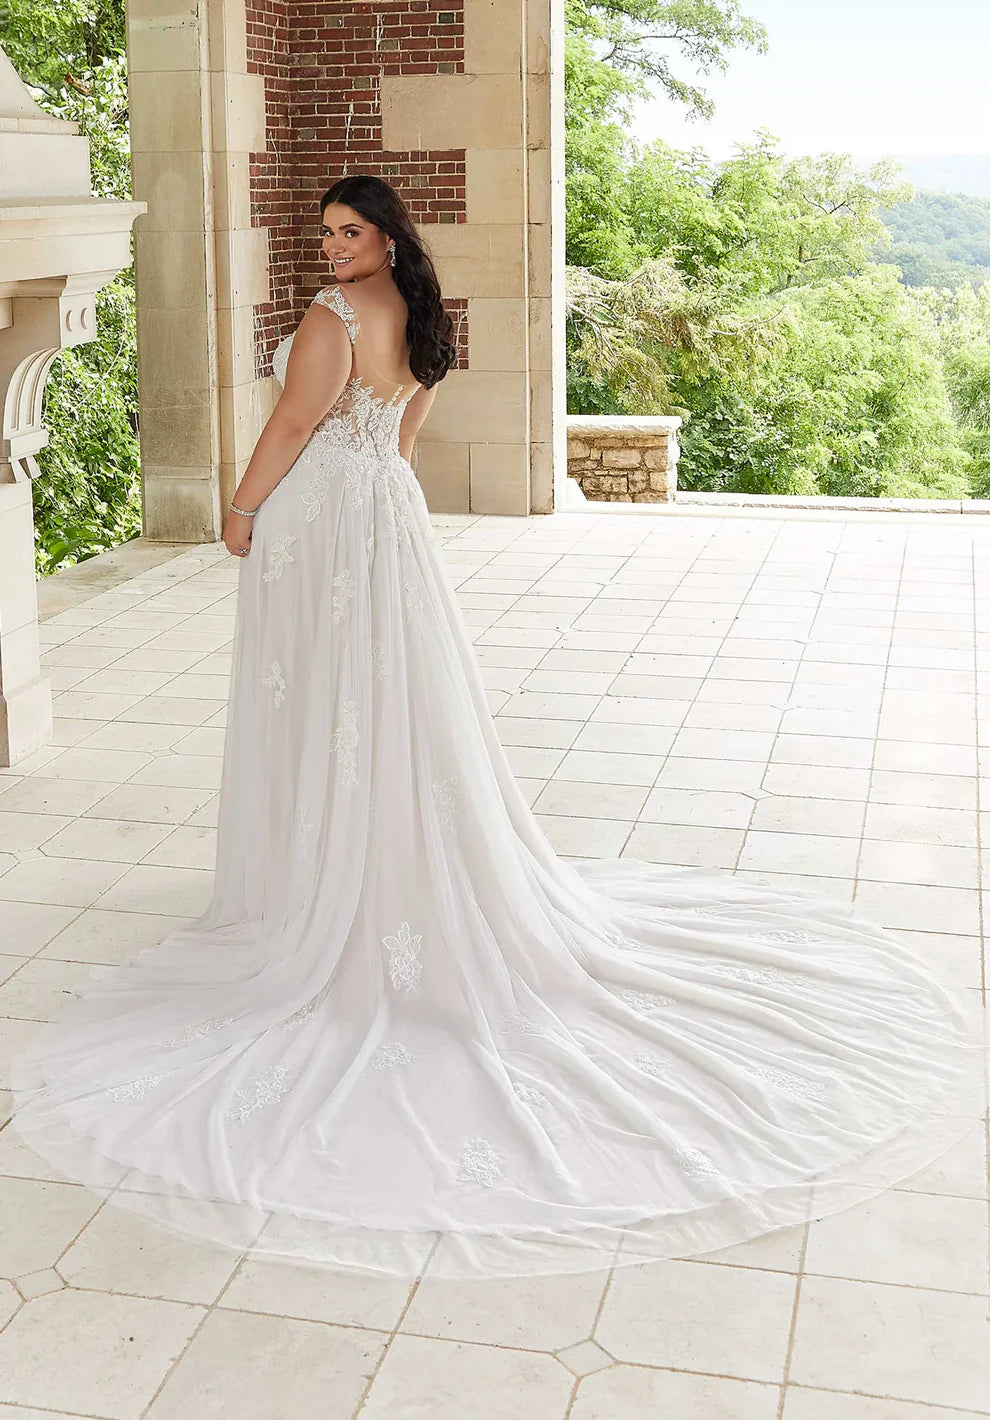 Boho grande taille robes de mariée encolure dégagée manches a-ligne Tulle blanc/ivoire robes de mariée vestidos de novia 